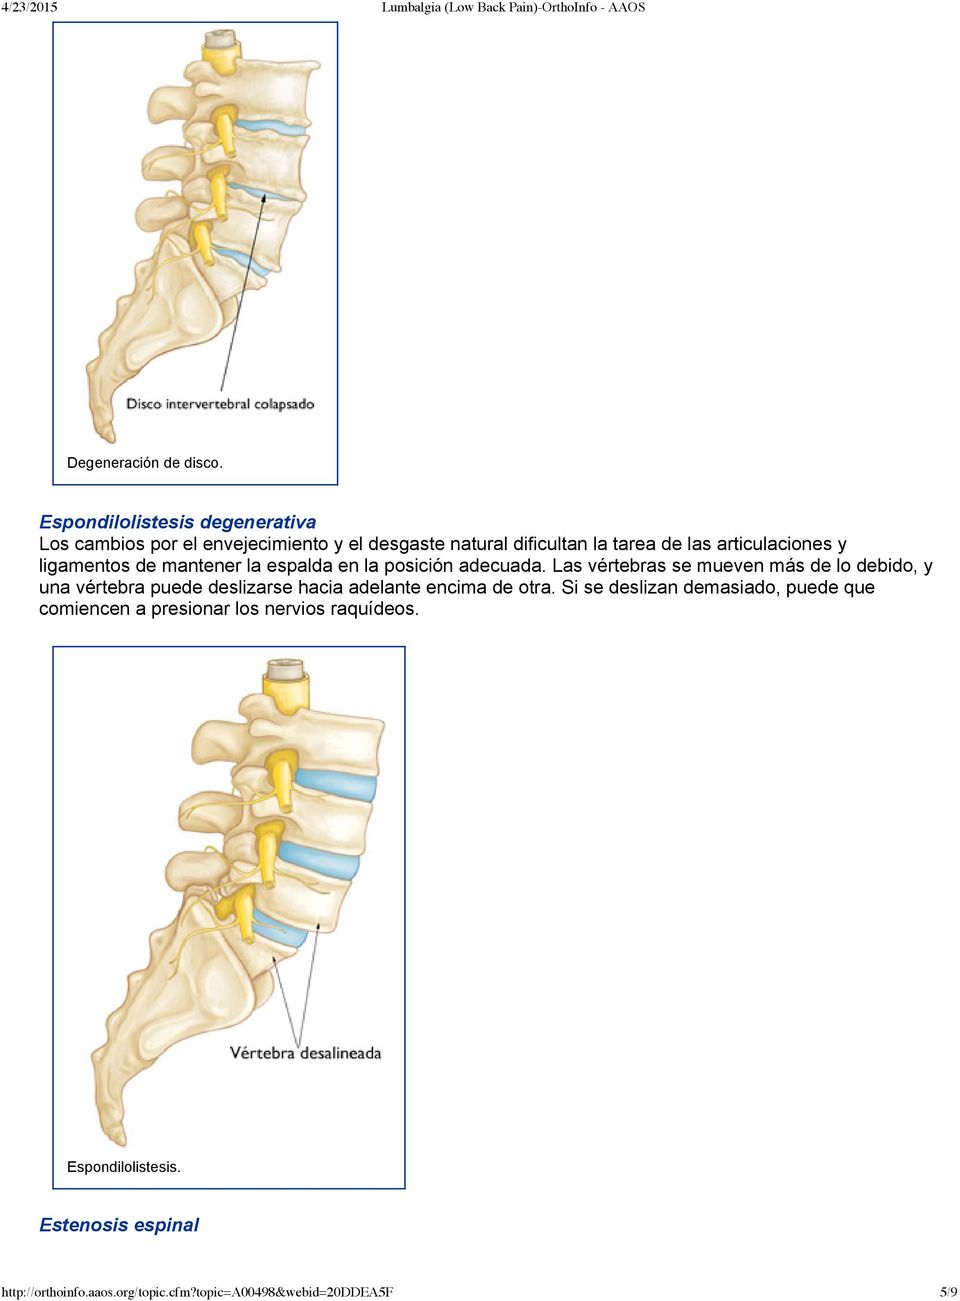 articulaciones y ligamentos de mantener la espalda en la posición adecuada.